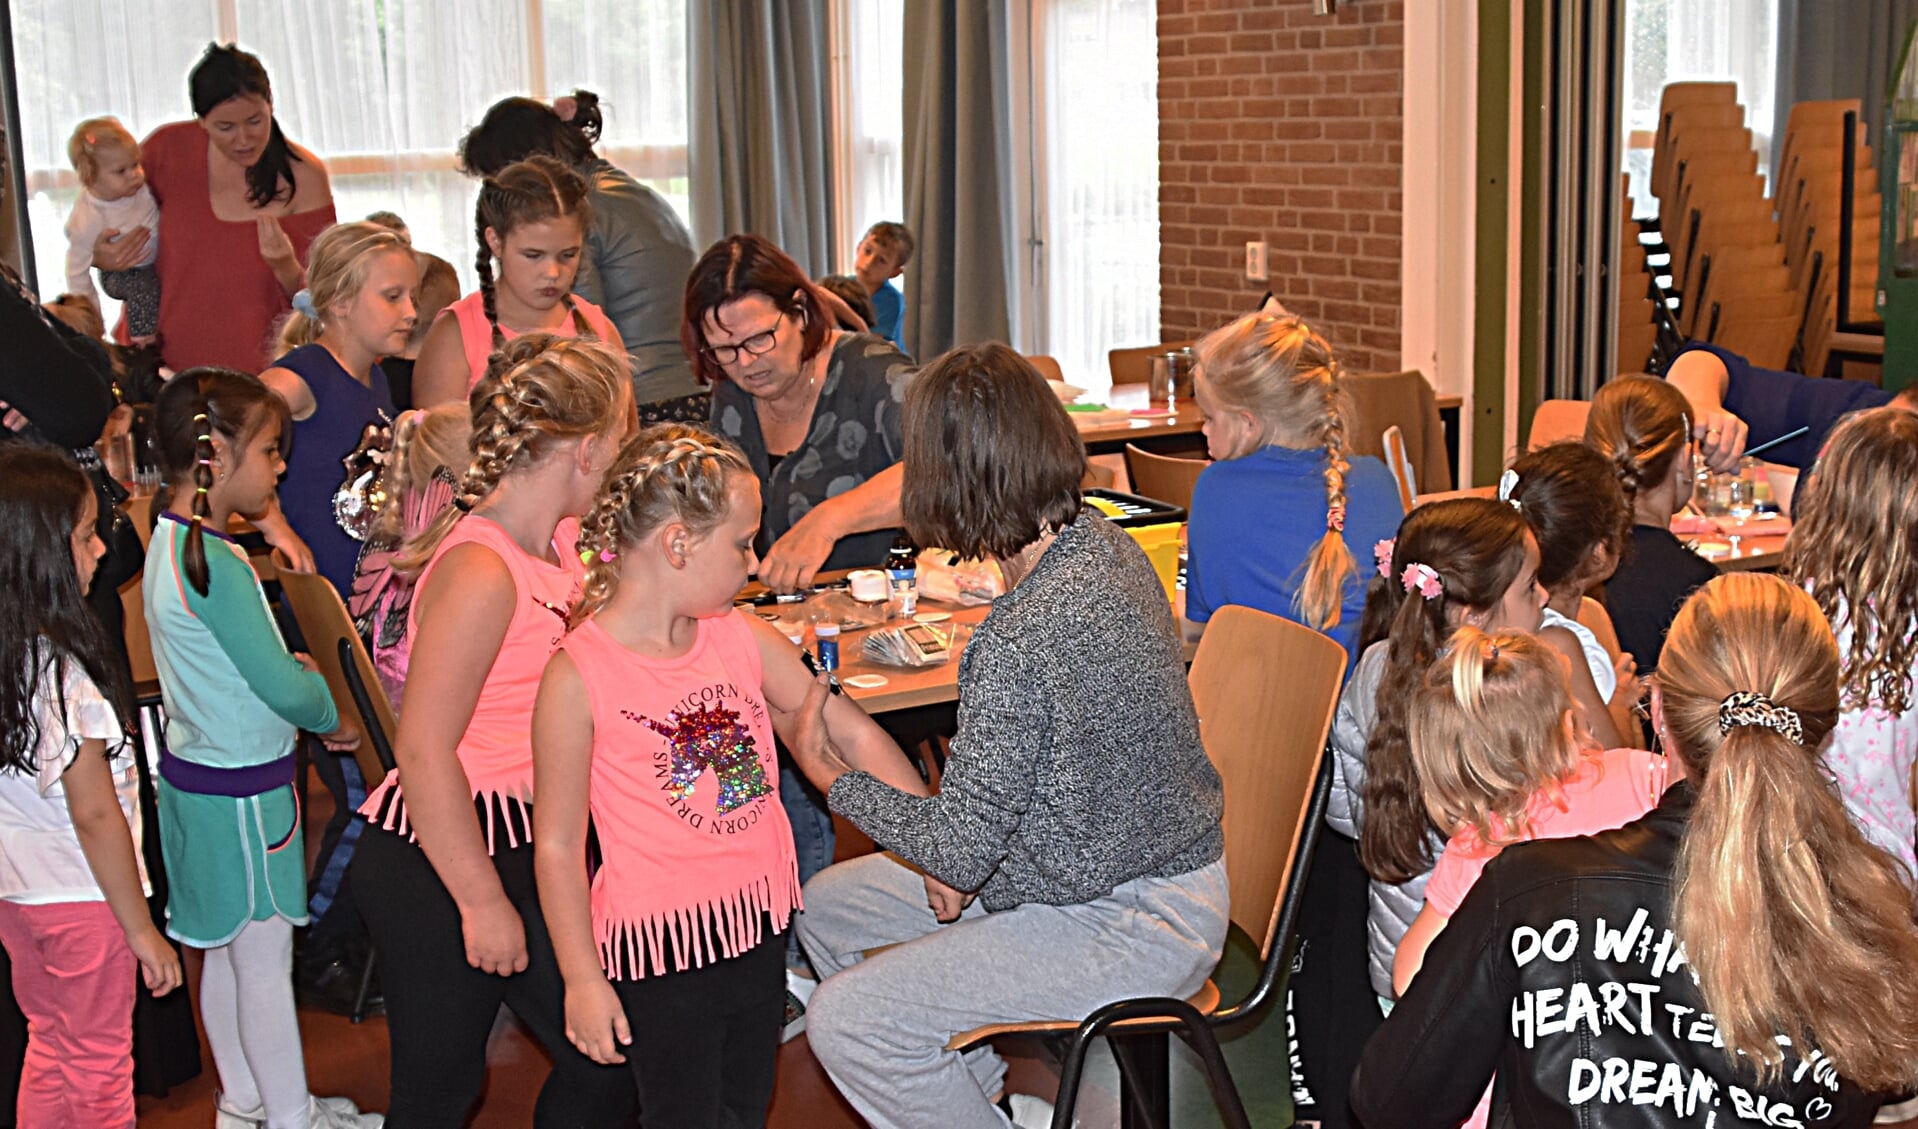 De eerste kindermiddag in De Mijlpaal was meteen een groot succes. | Foto en tekst: Piet van Kampen